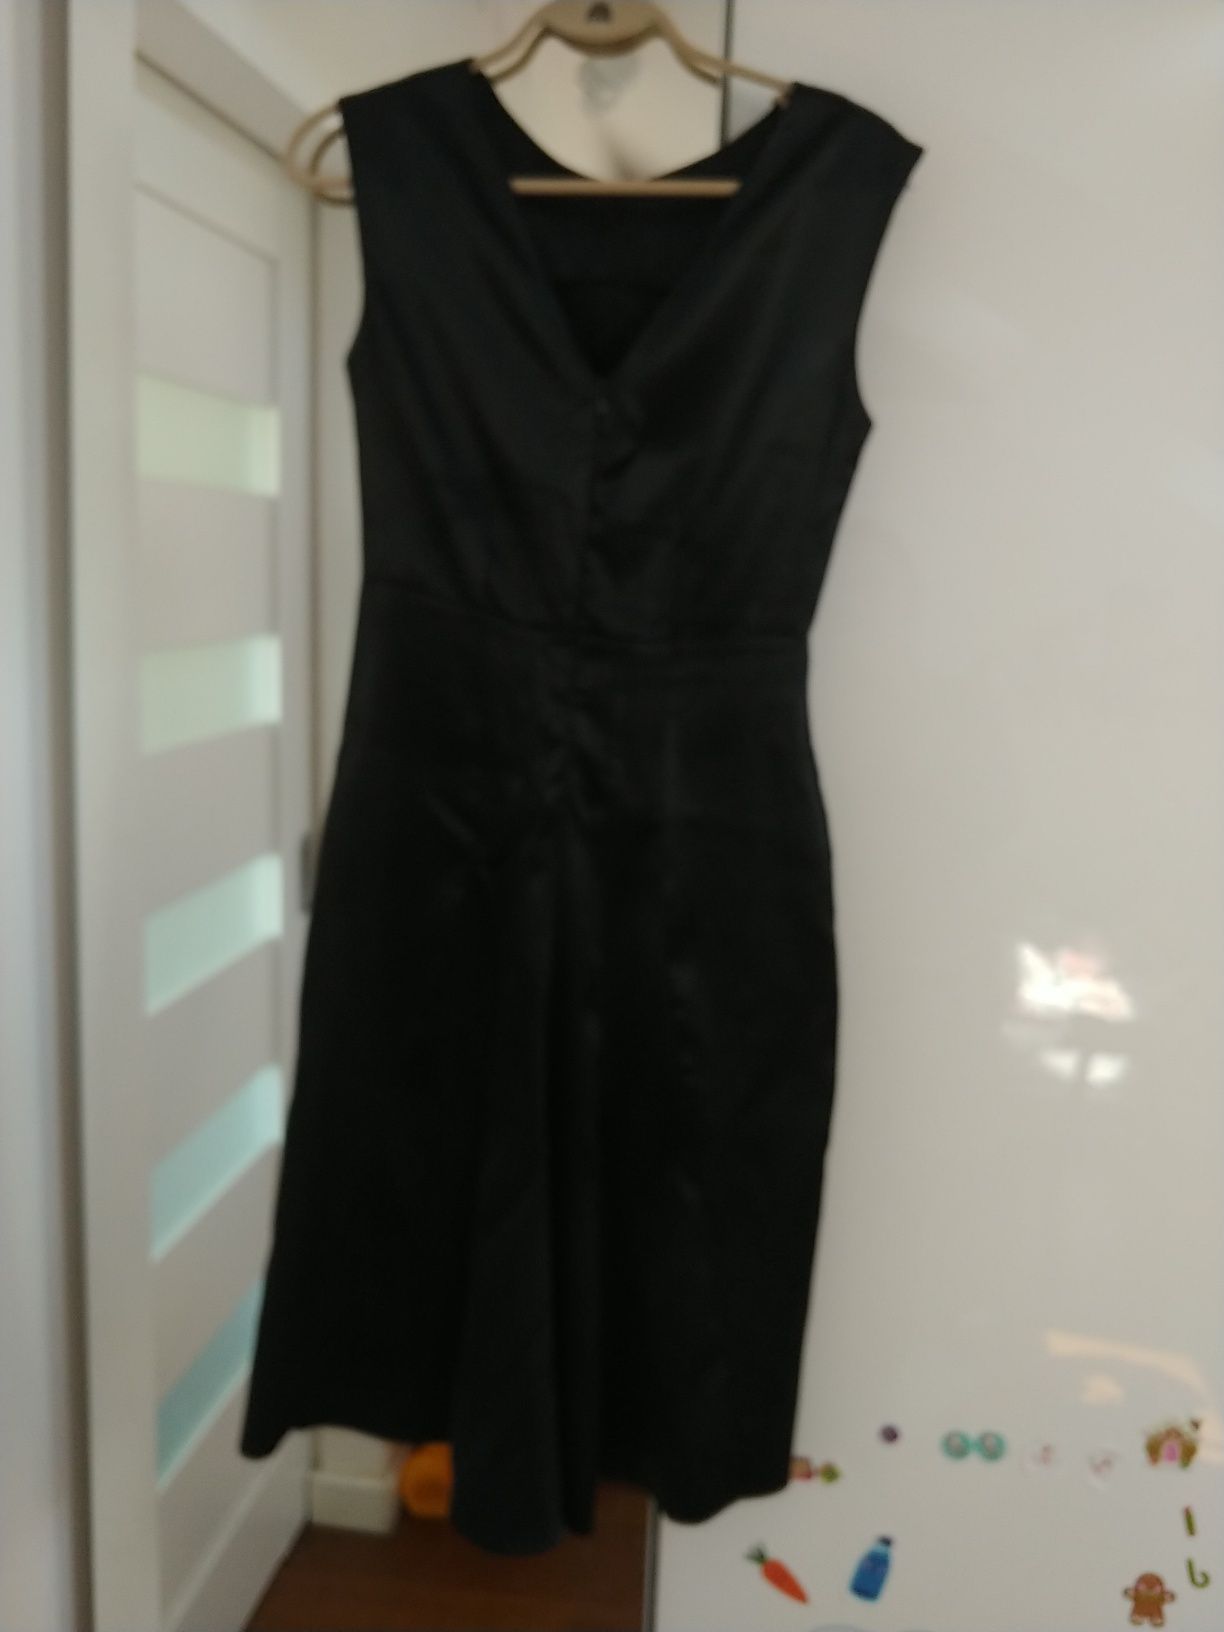 Elegancka mała czarna sukienka Nuance 38. Satynowy połysk, bez rękawów